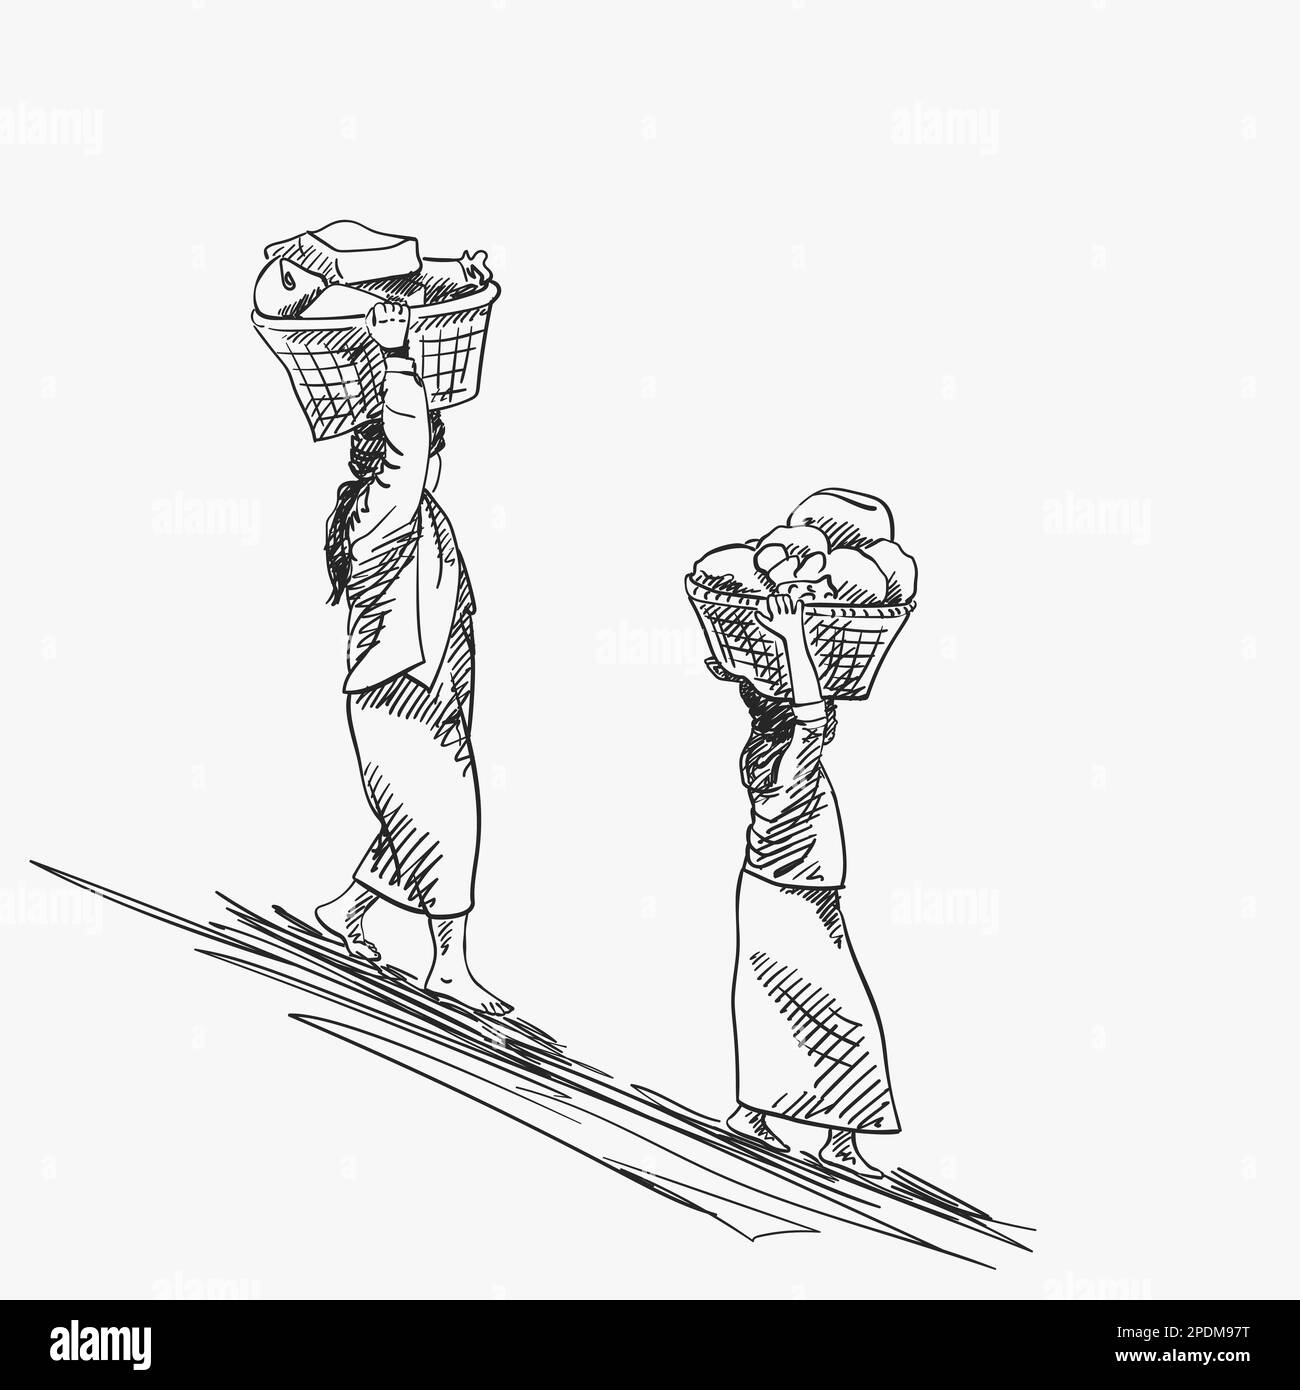 Deux femmes birmanes portent de grands paniers sur leur tête en descente, esquisse Vector avec des nuances hachurées, illustration dessinée à la main Illustration de Vecteur